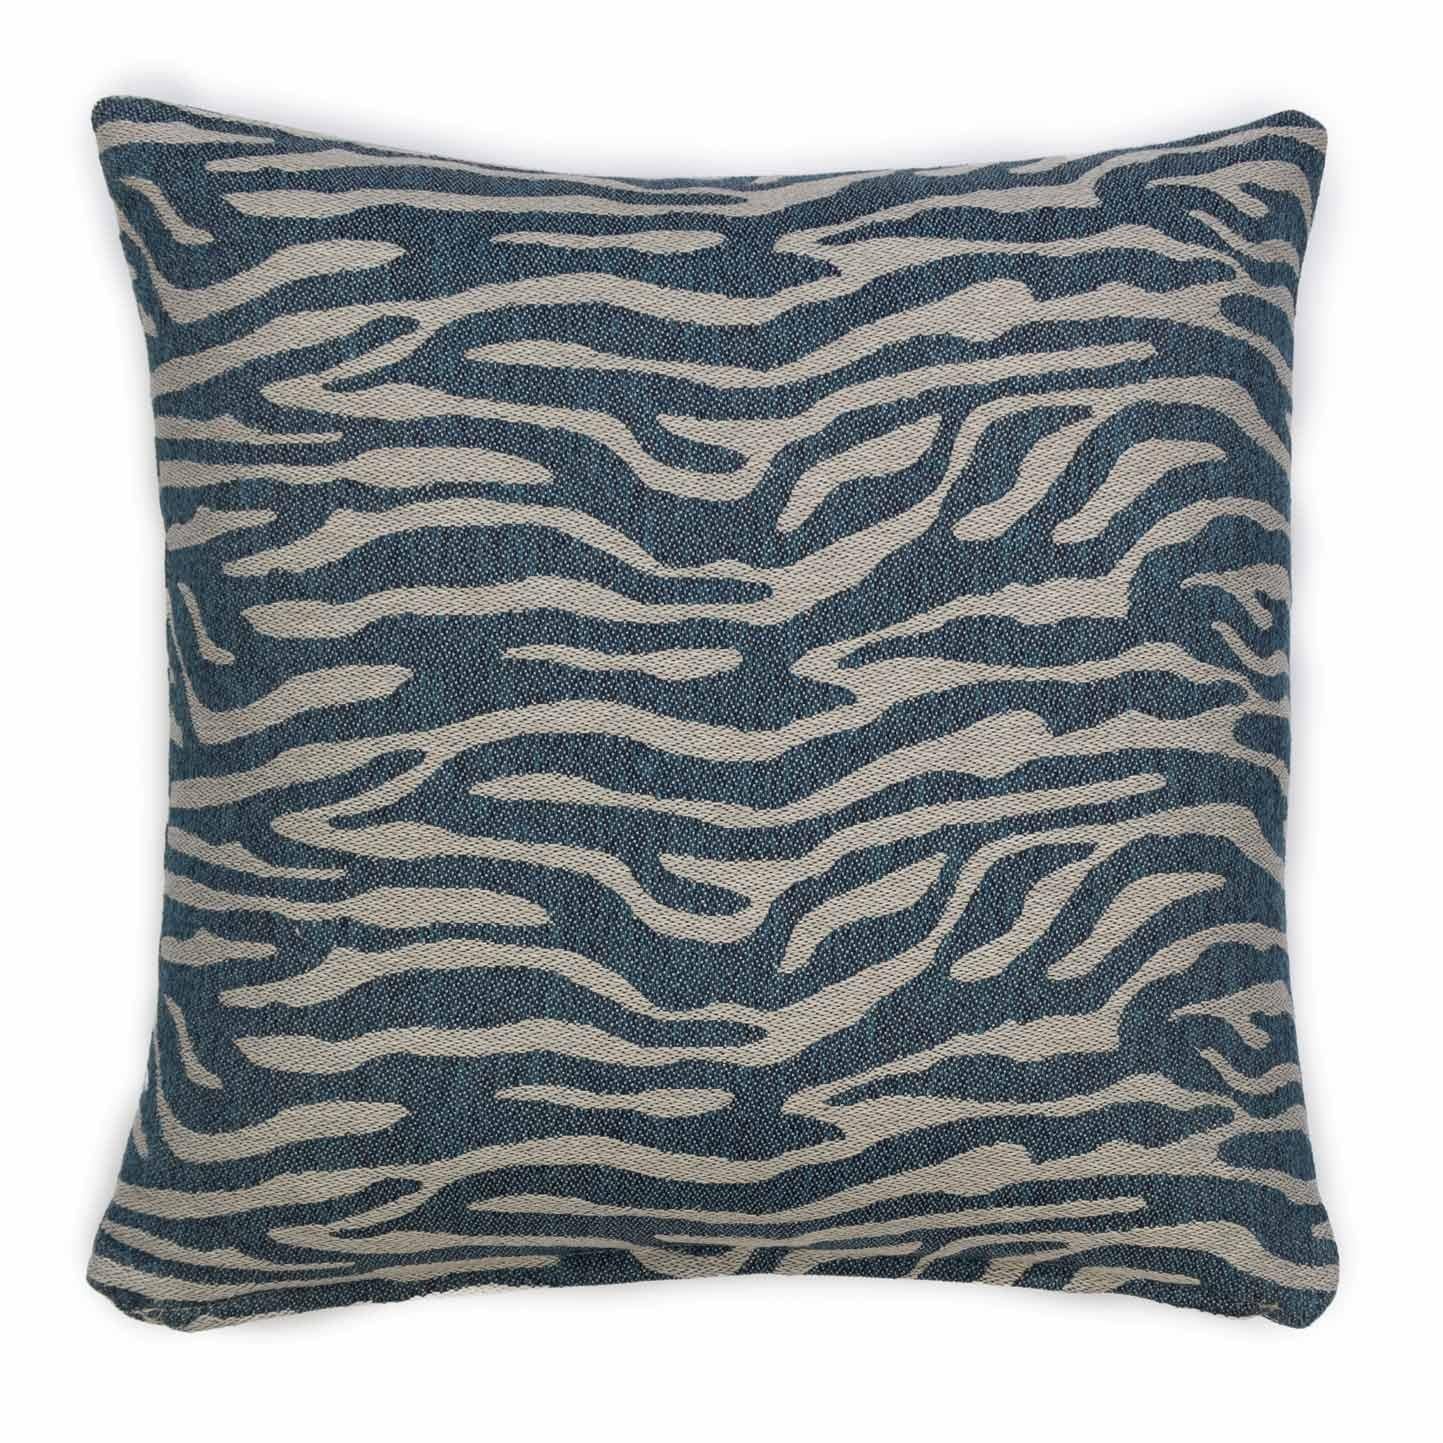 Belgian Modern Textured Patterned Throw Pillow Blue 